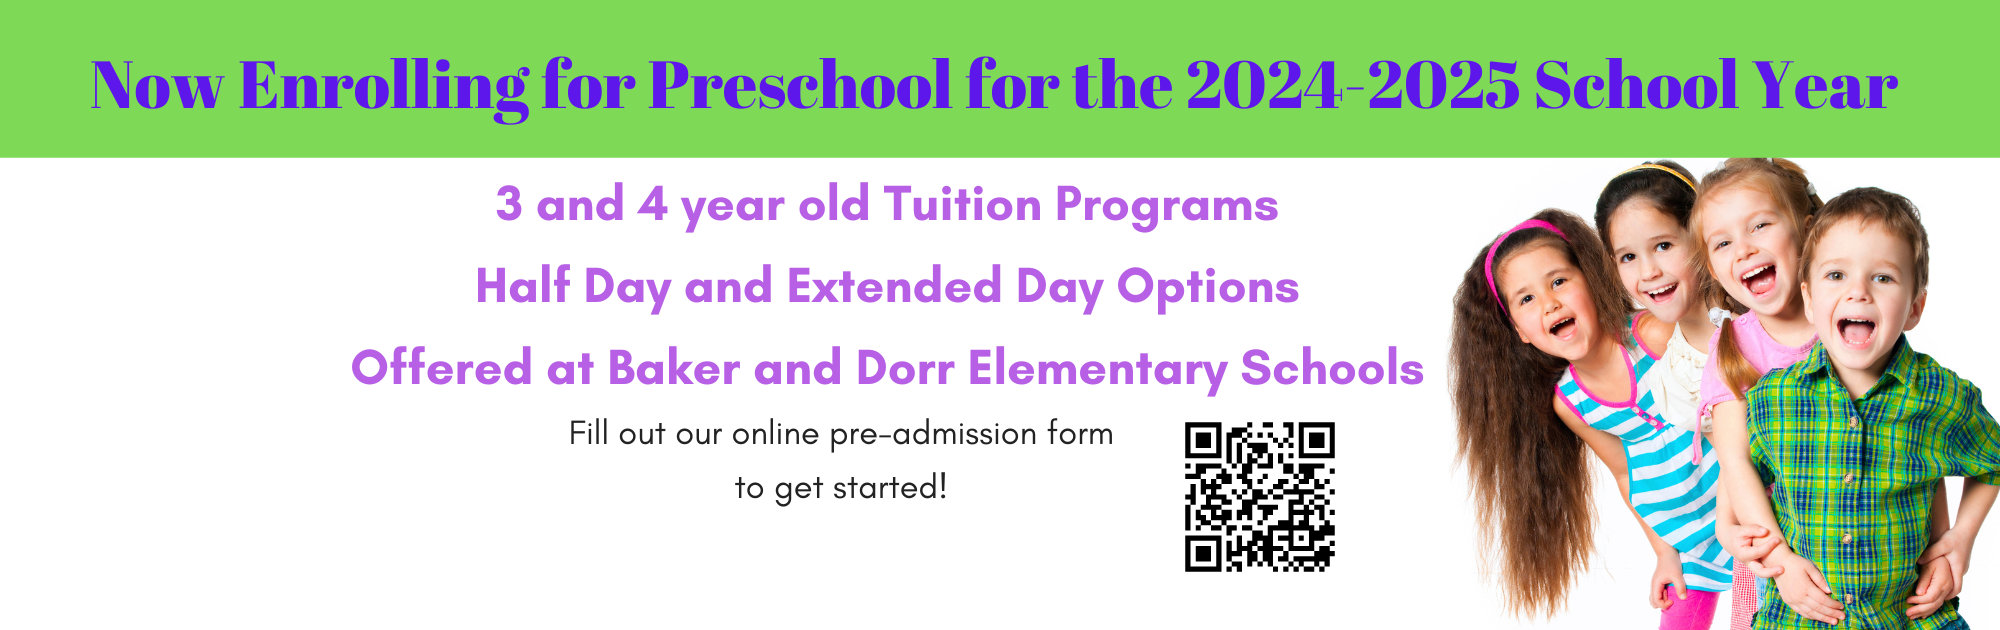 24-25 Preschool Enrollment Cover